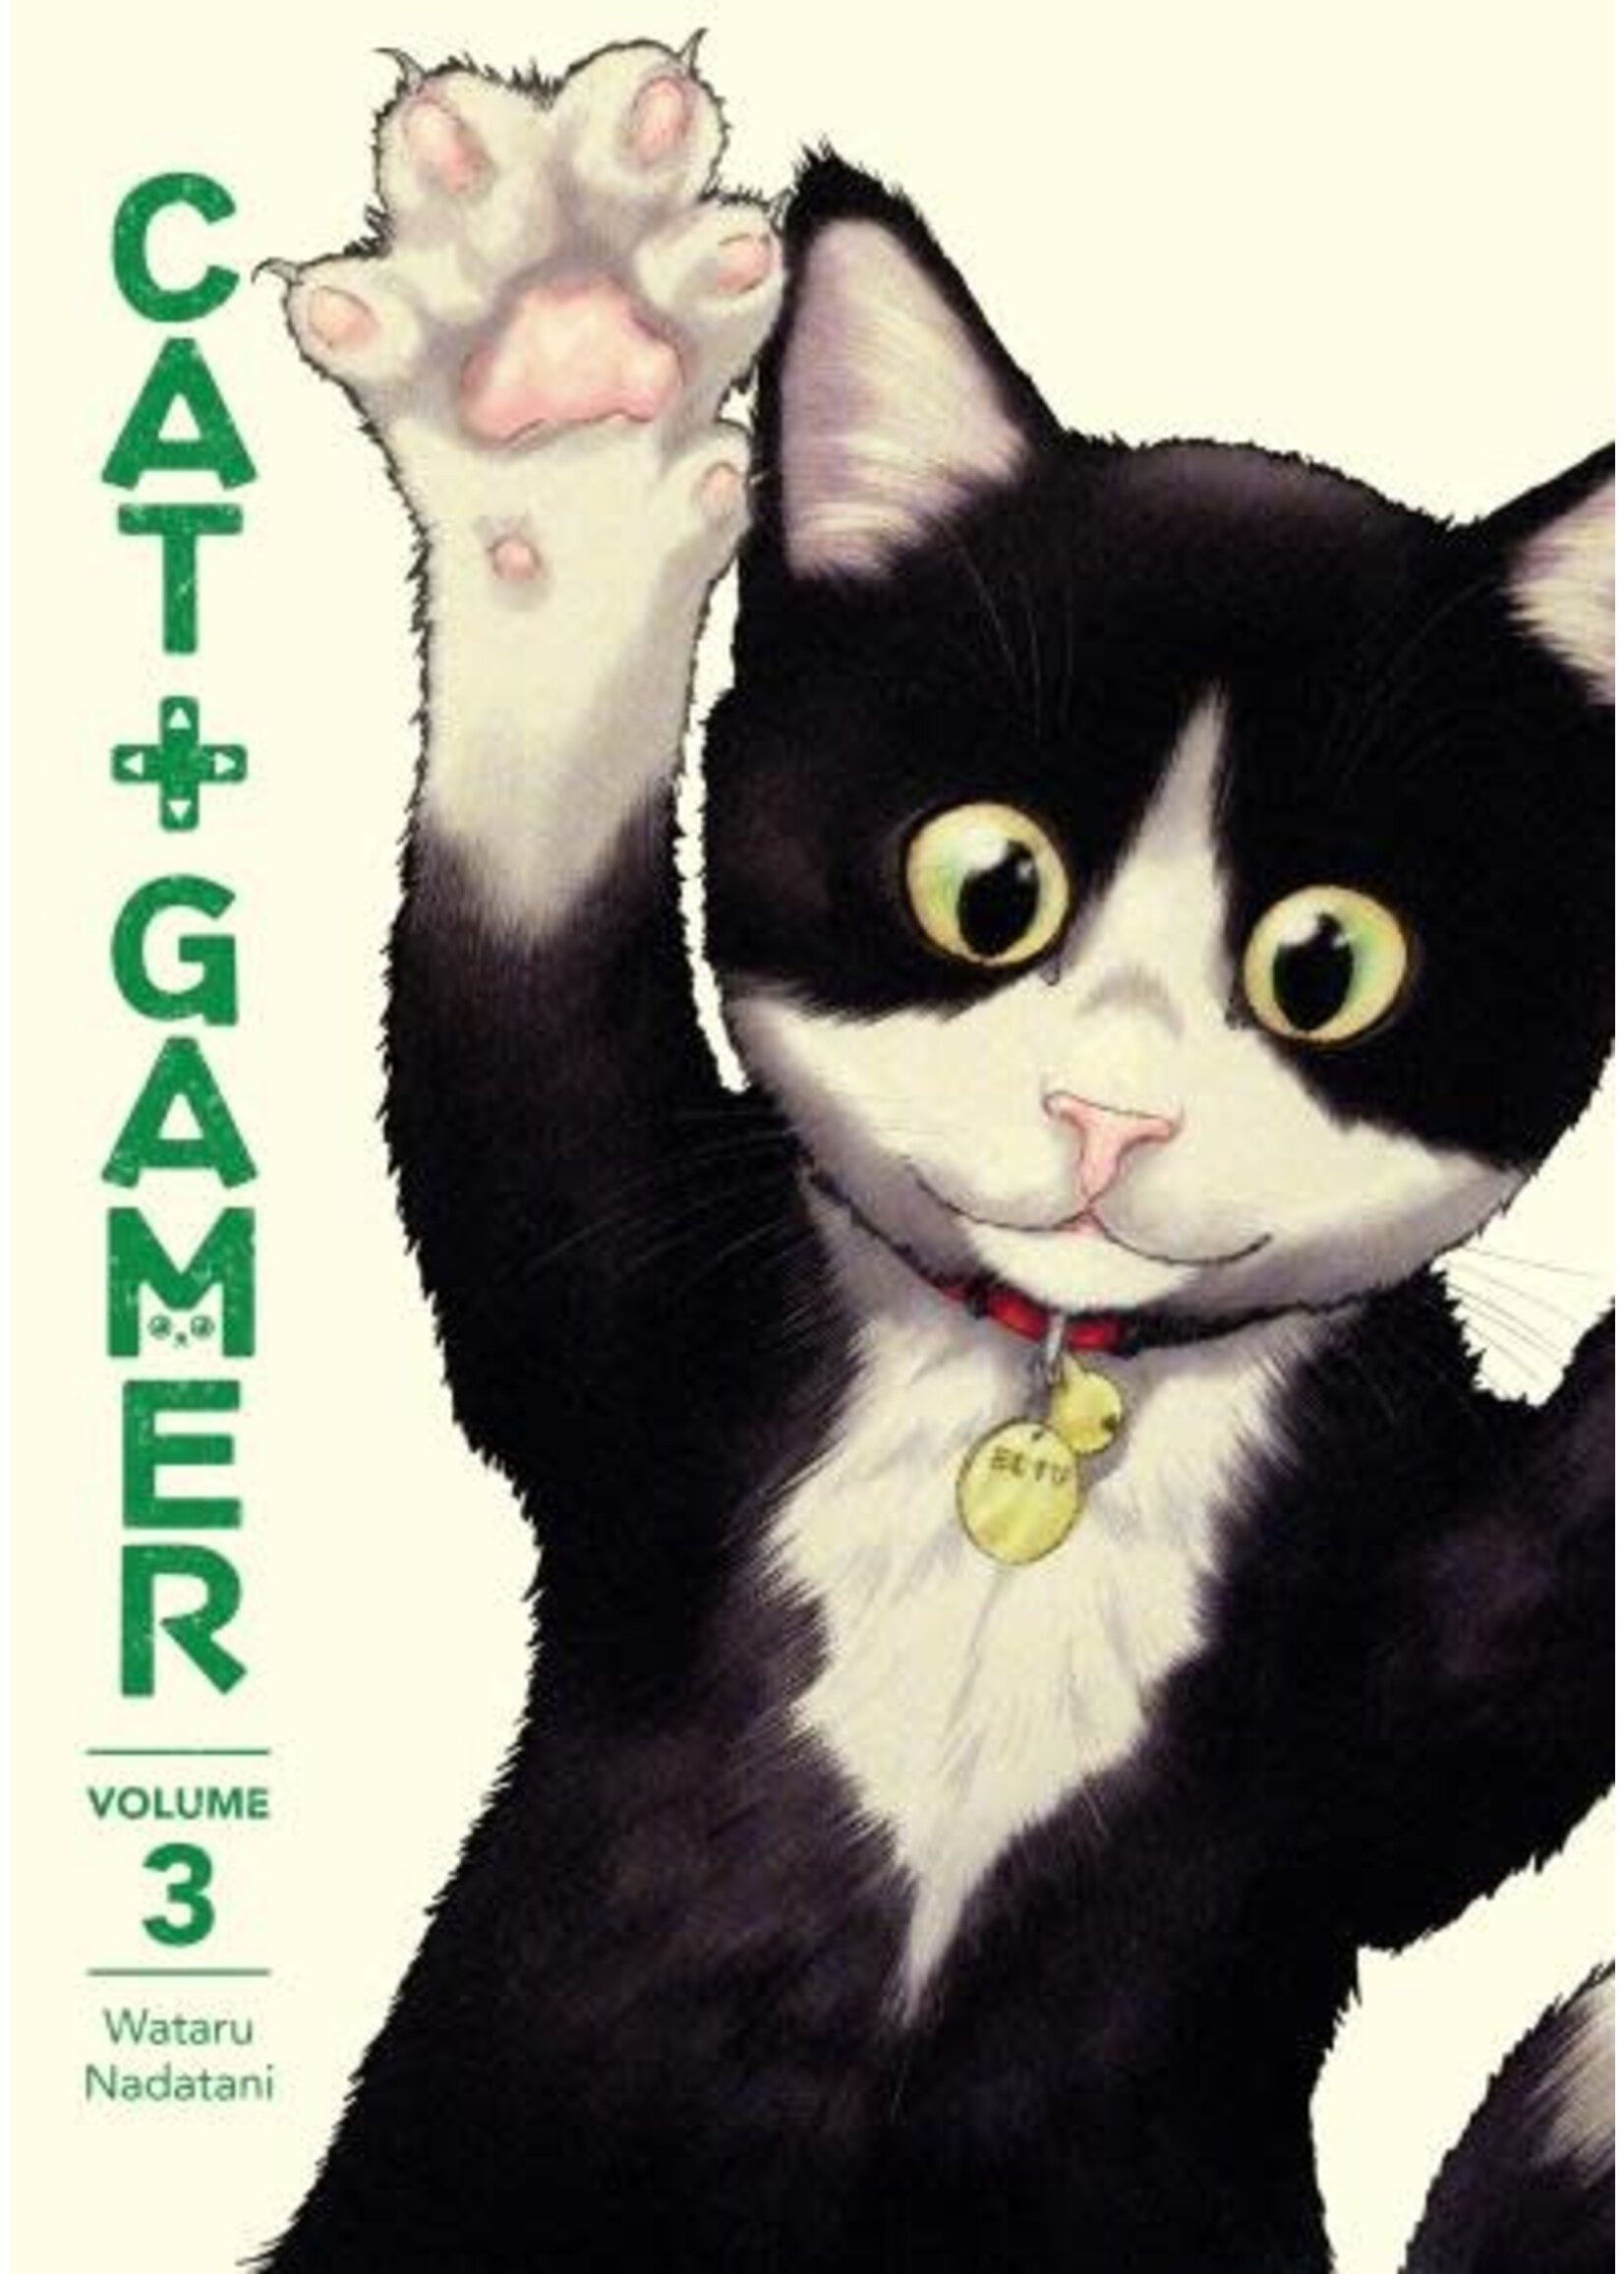 Cat + Gamer, Vol. 3 by Wataru Nadatani